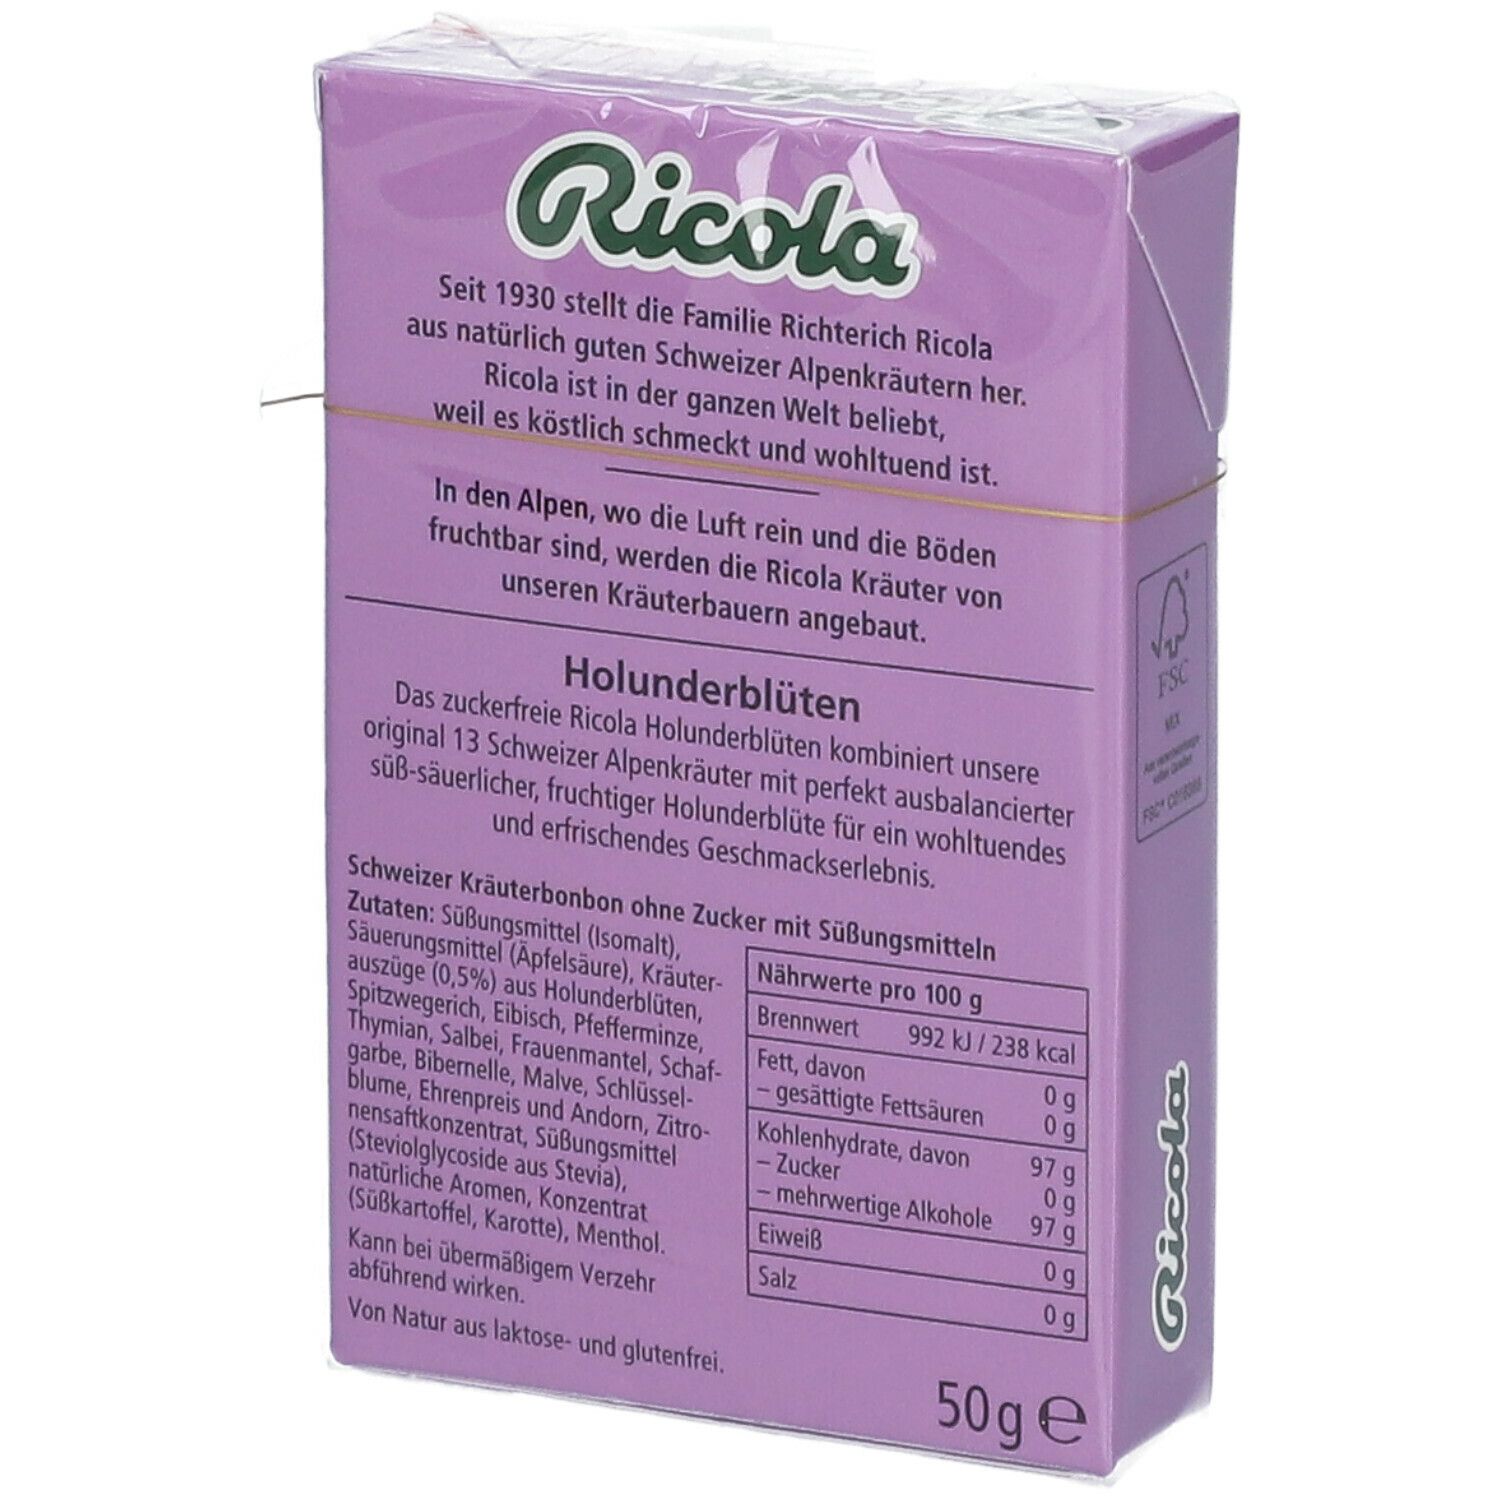 Ricola® Schweizer Kräuterbonbons Box Holunderblüten ohne Zucker